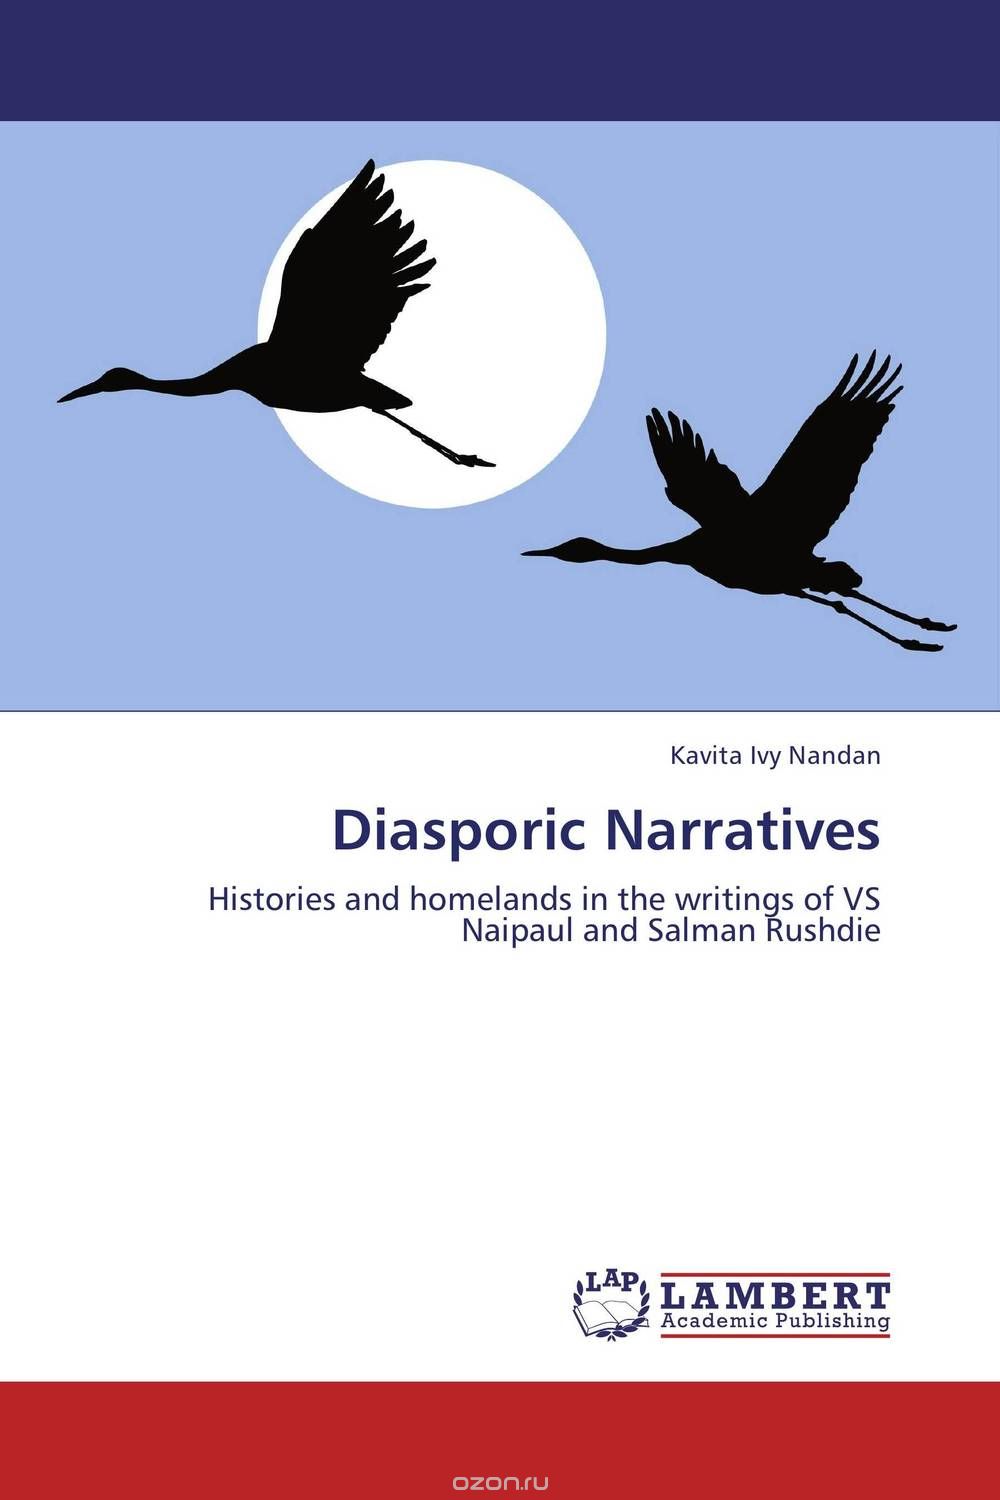 Скачать книгу "Diasporic Narratives"